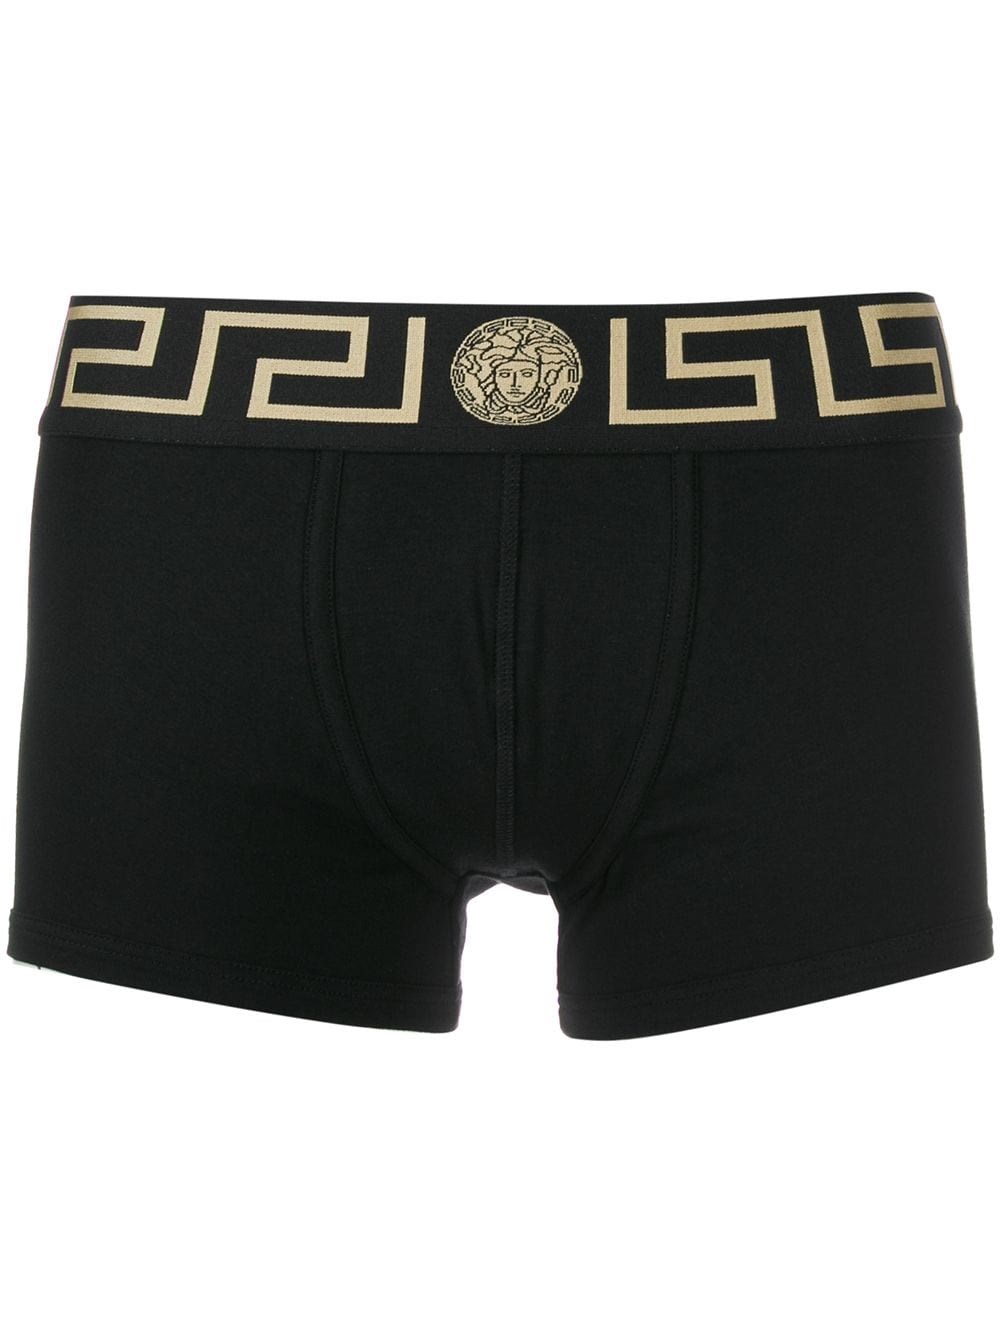 Versace Underwear Black and Red Greek Band Boxer Briefs Versace